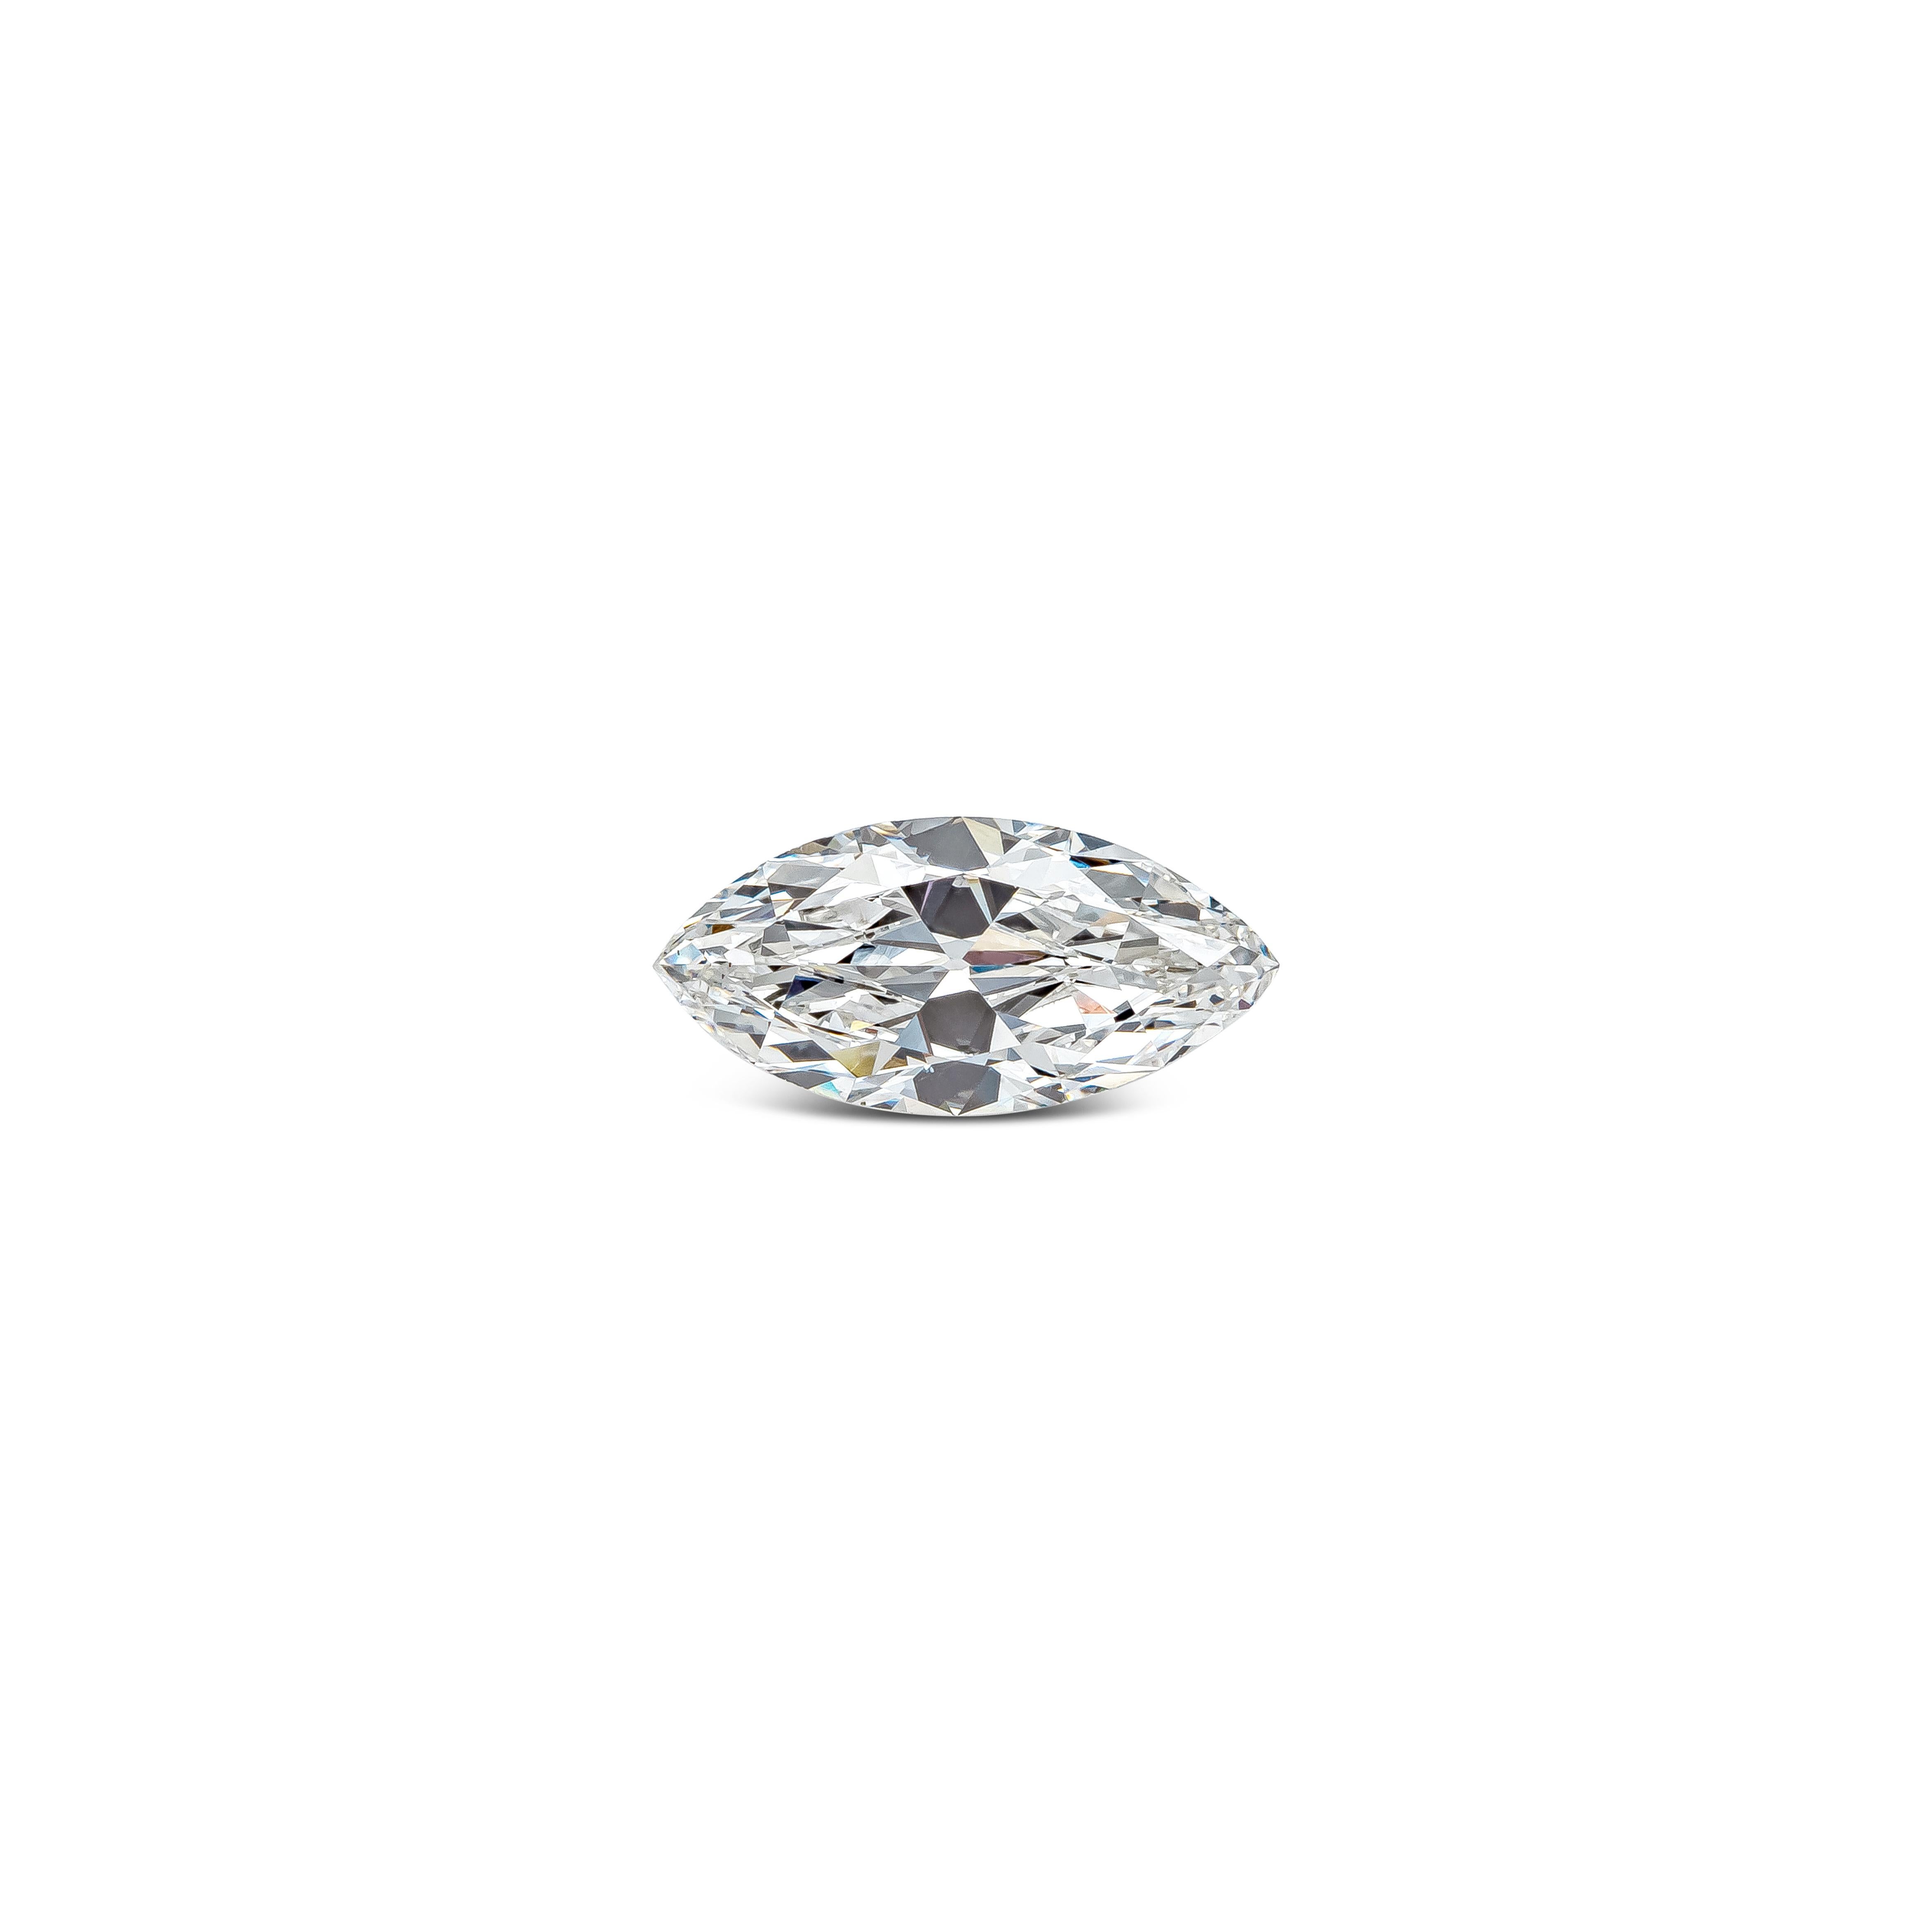 Ein loser Diamant im Marquise-Schliff mit GIA-Zertifikat der Farbe G und der Reinheit VS2, mit guter Politur und Symmetrie. Der Diamant misst 12,56 x 5,96 x 3,32 Millimeter.

Erhältlich in einer handgefertigten Fassung Ihrer Wahl. Kontaktieren Sie